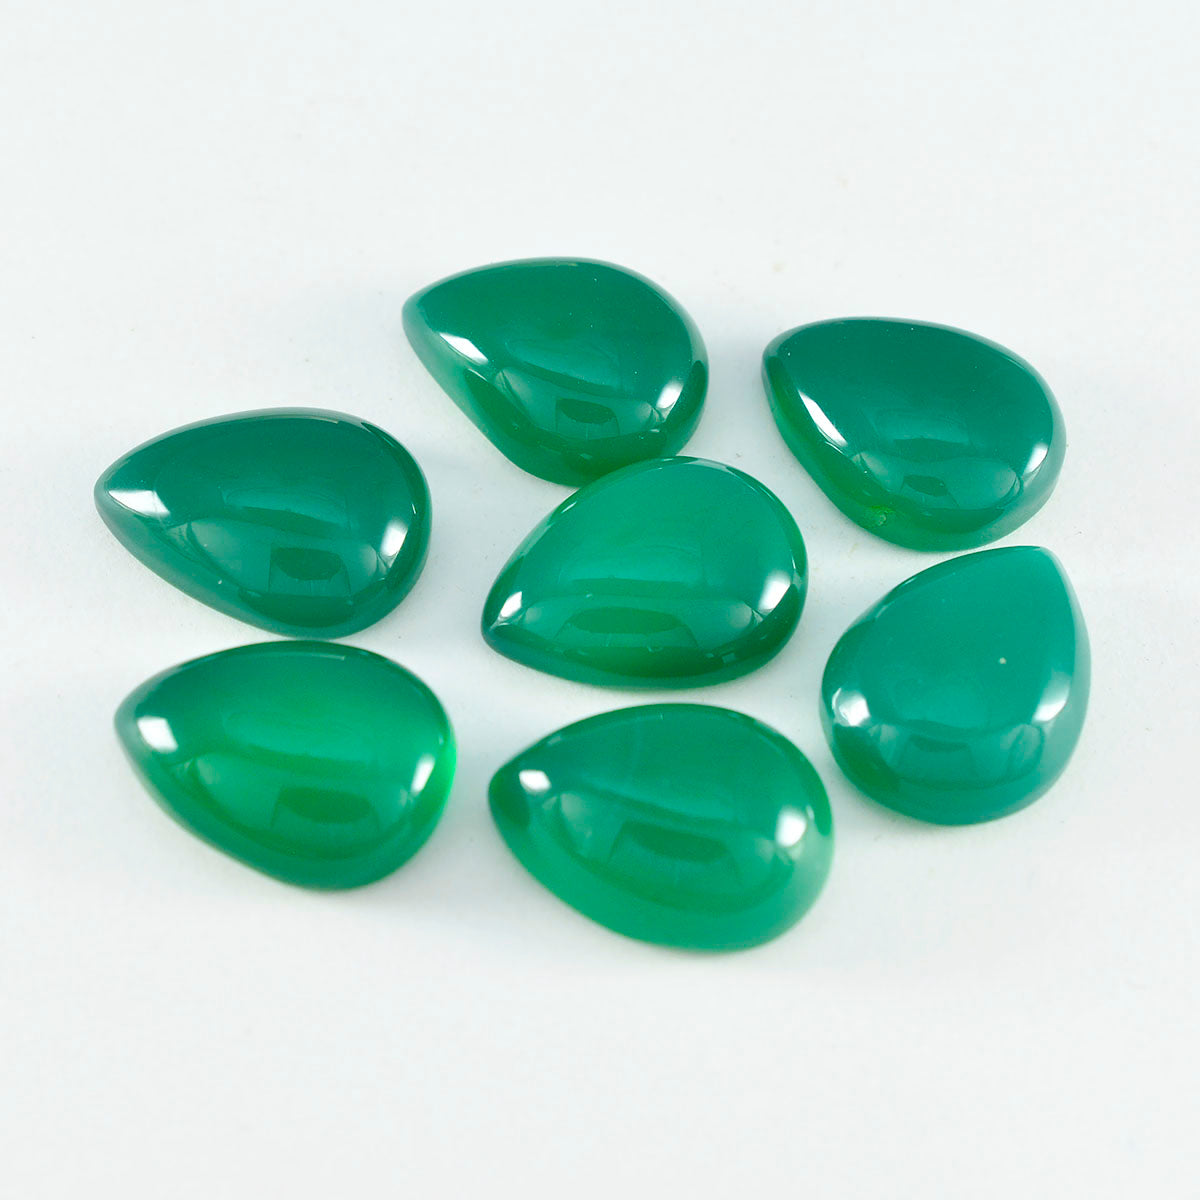 riyogems 1шт зеленый оникс кабошон 10х14 мм грушевидной формы отличное качество россыпь драгоценных камней